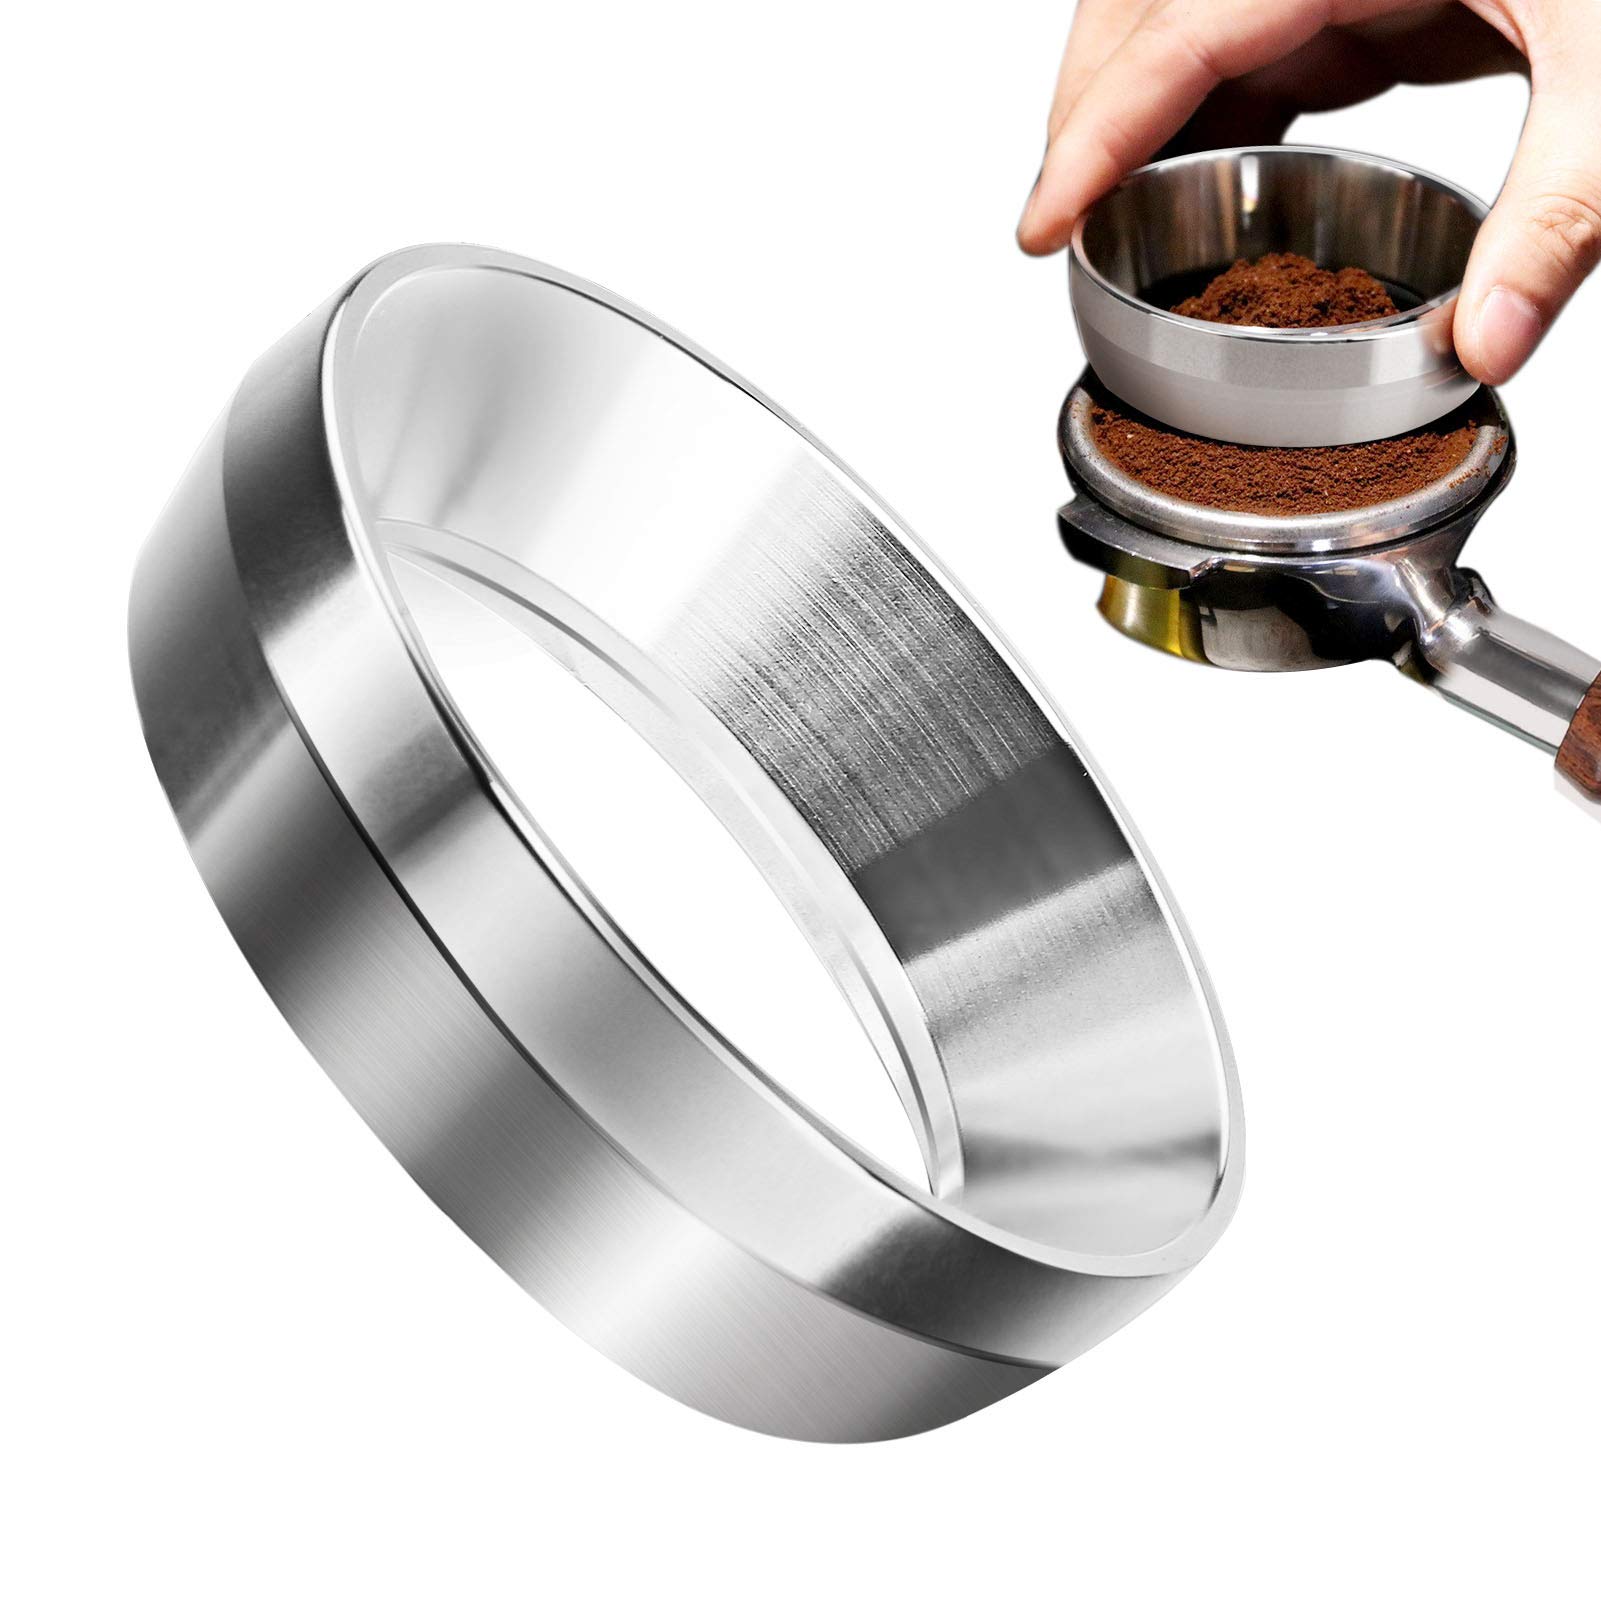 58mm Espresso Coffee Dosing Funnel for Portafilter